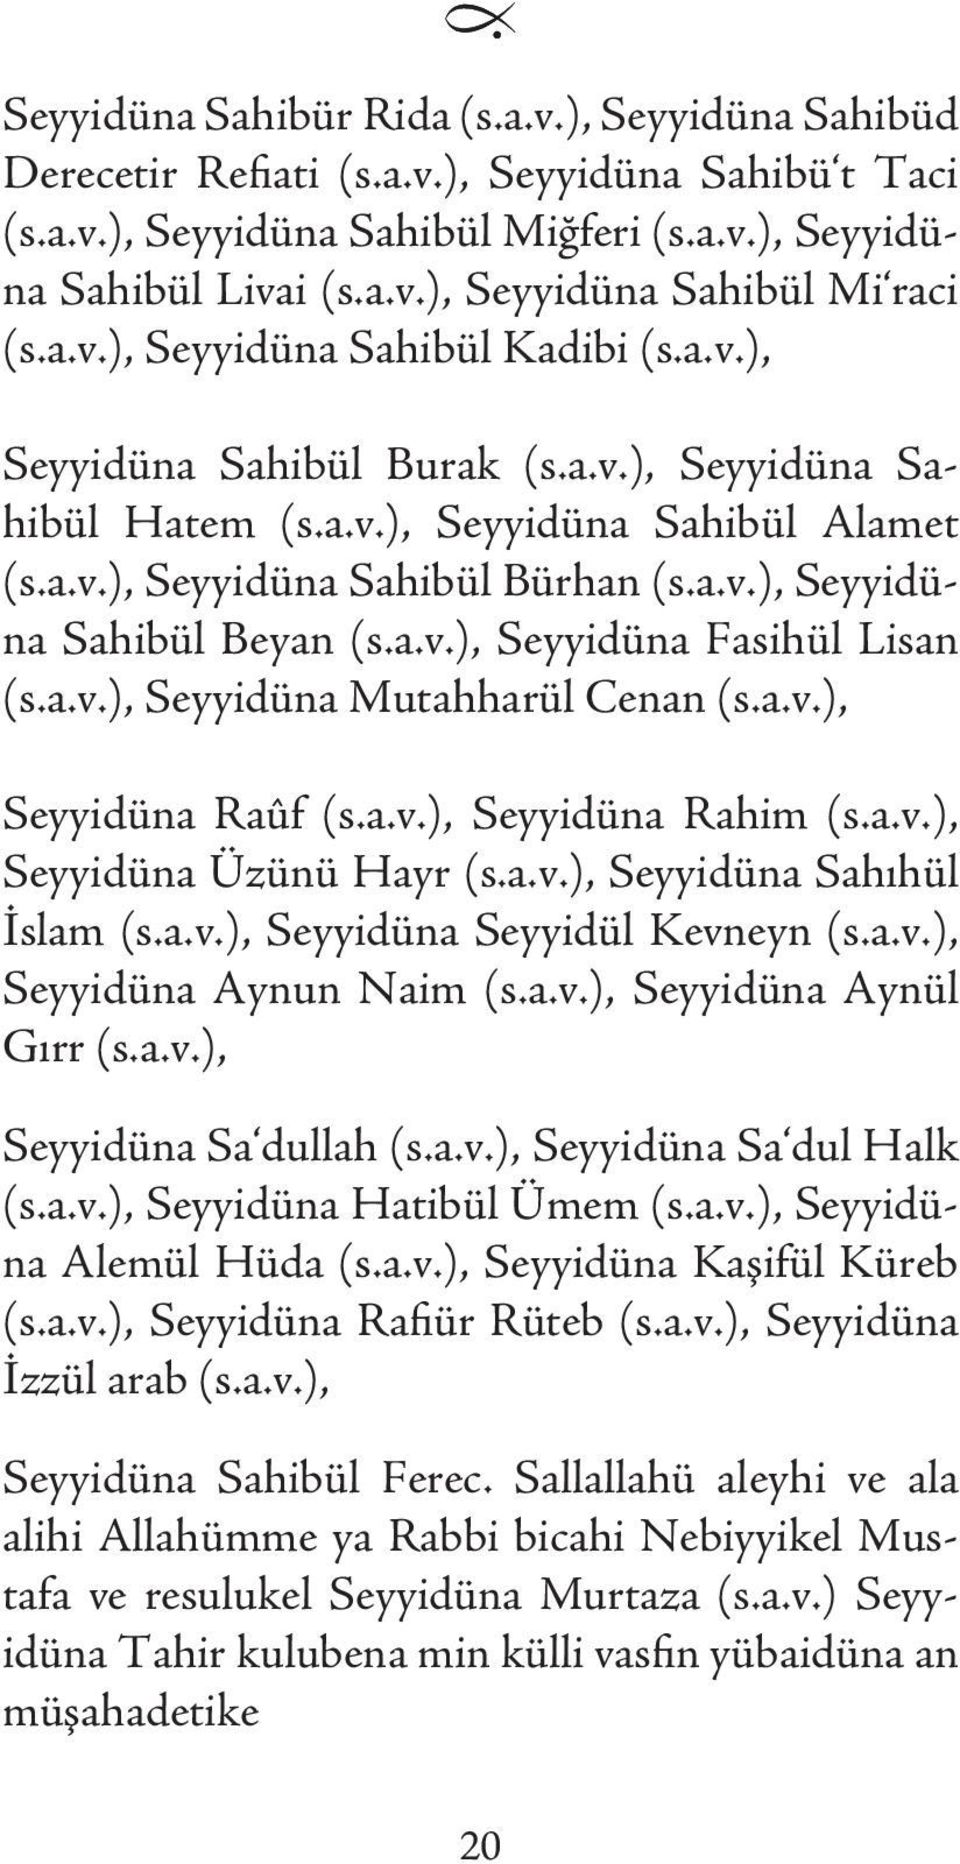 a.v.), Seyyidüna Fasihül Lisan (s.a.v.), Seyyidüna Mutahharül Cenan (s.a.v.), Seyyidüna Raûf (s.a.v.), Seyyidüna Rahim (s.a.v.), Seyyidüna Üzünü Hayr (s.a.v.), Seyyidüna Sahıhül İslam (s.a.v.), Seyyidüna Seyyidül Kevneyn (s.